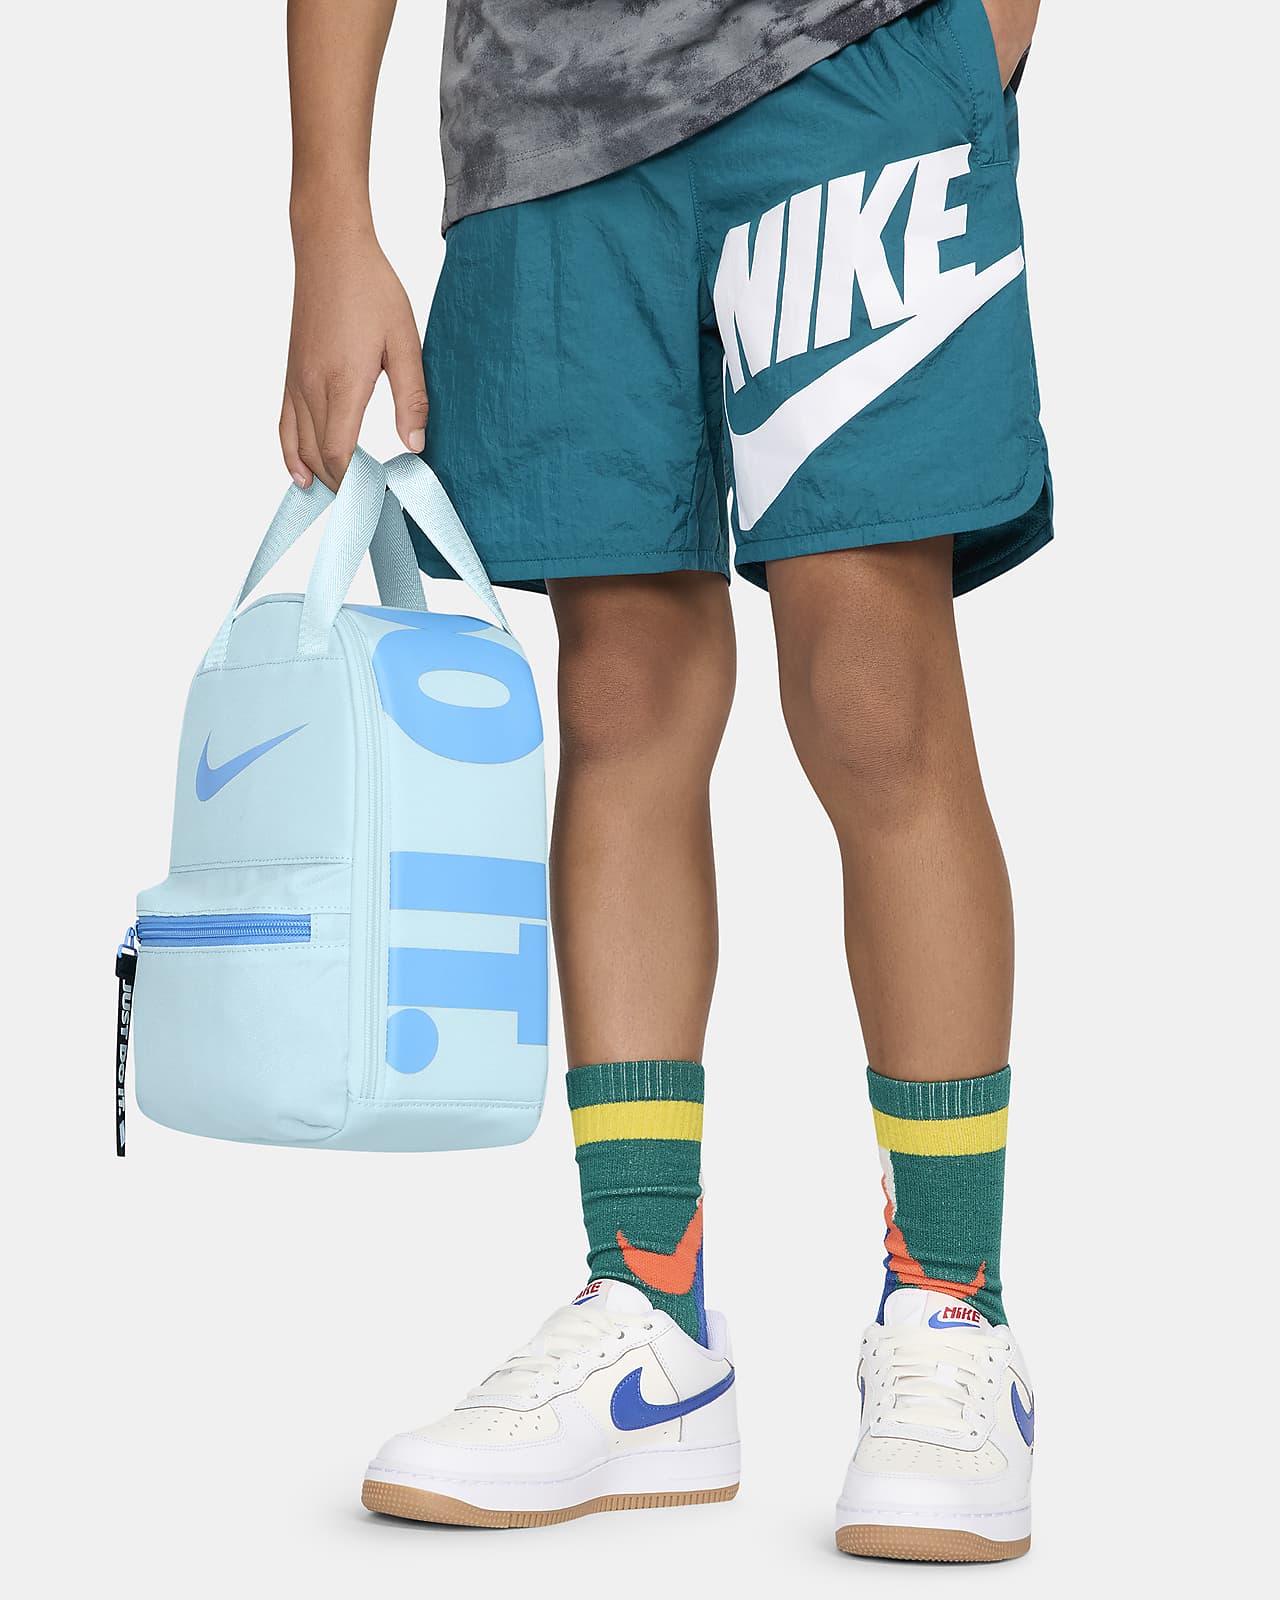 Borsa portapranzo Nike Fuel Pack